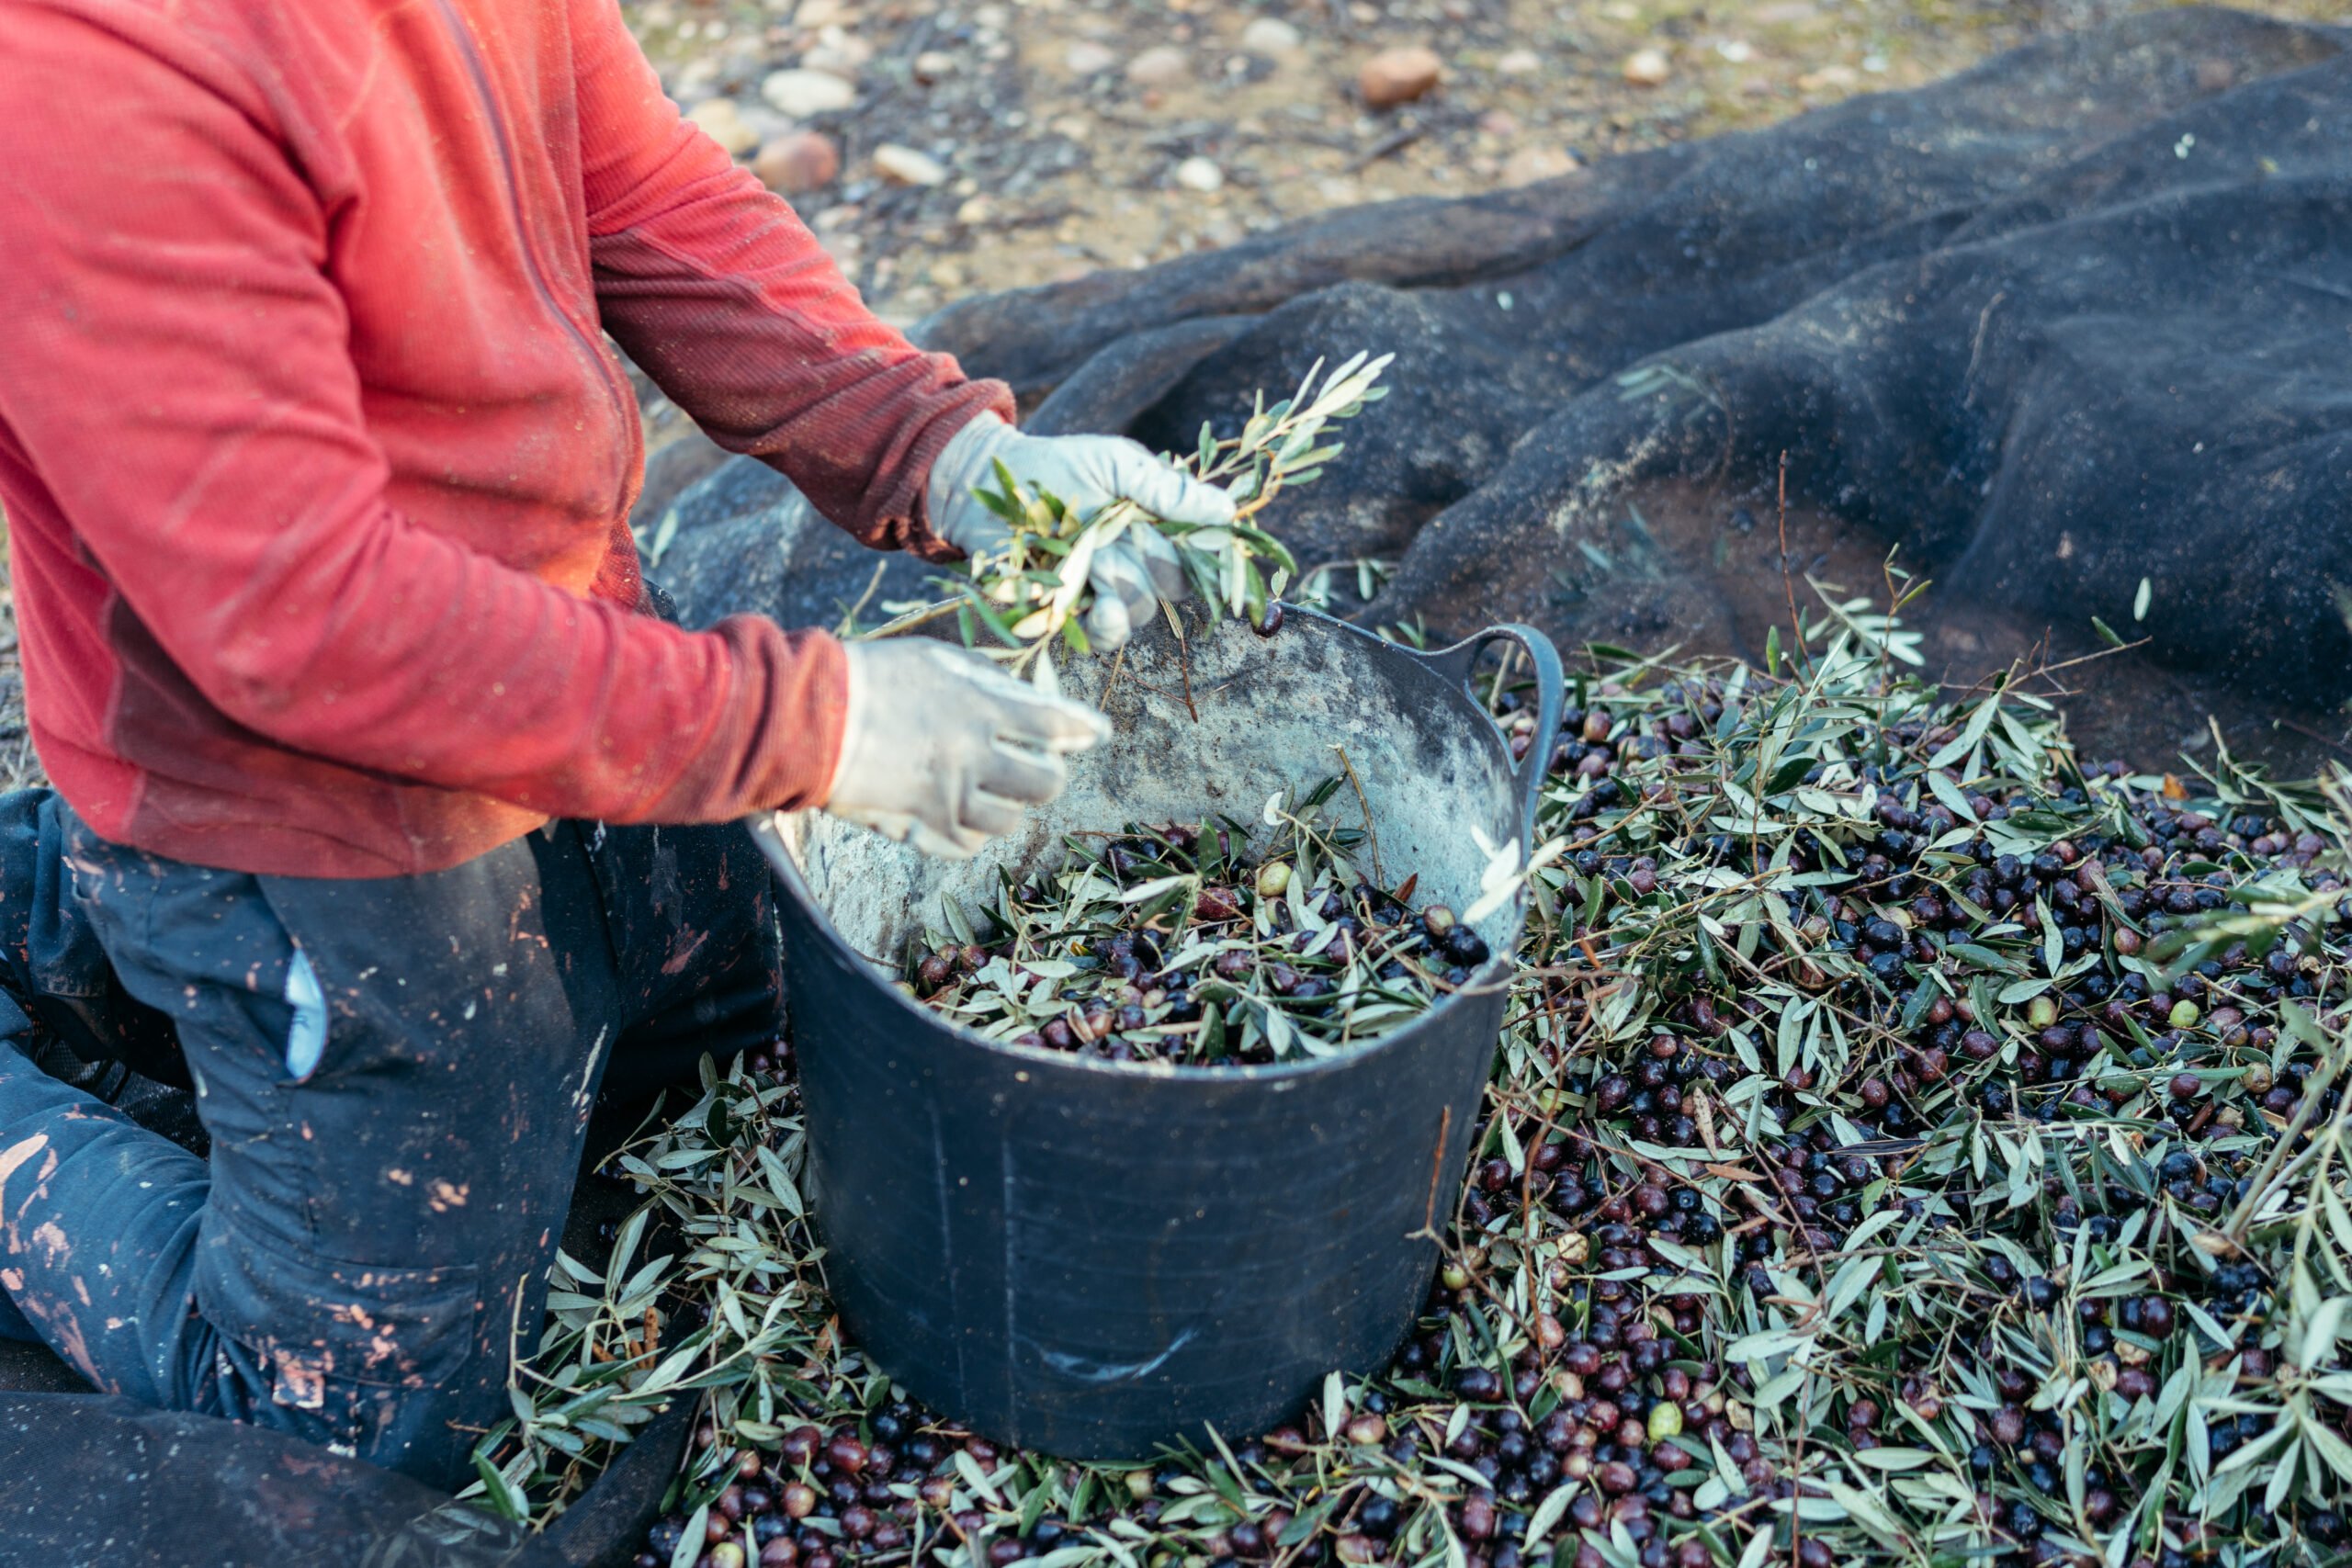 lavoratore in ginocchio che separa le olive dai rami e le getta in una cesta